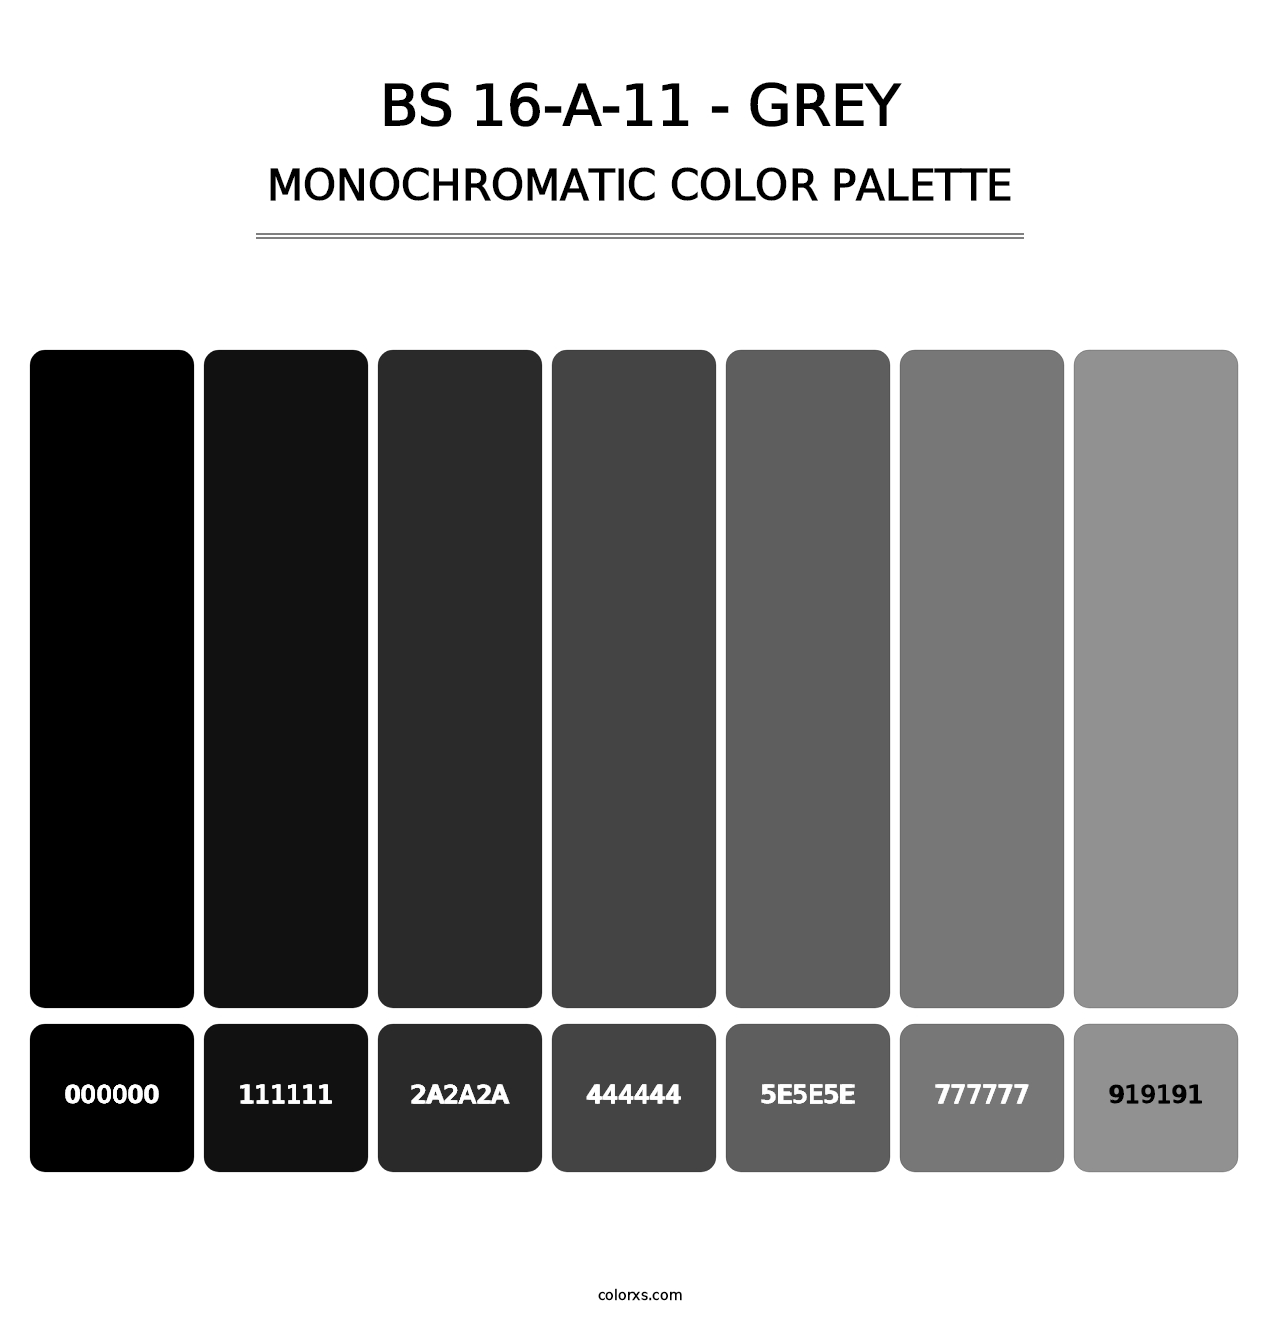 BS 16-A-11 - Grey - Monochromatic Color Palette